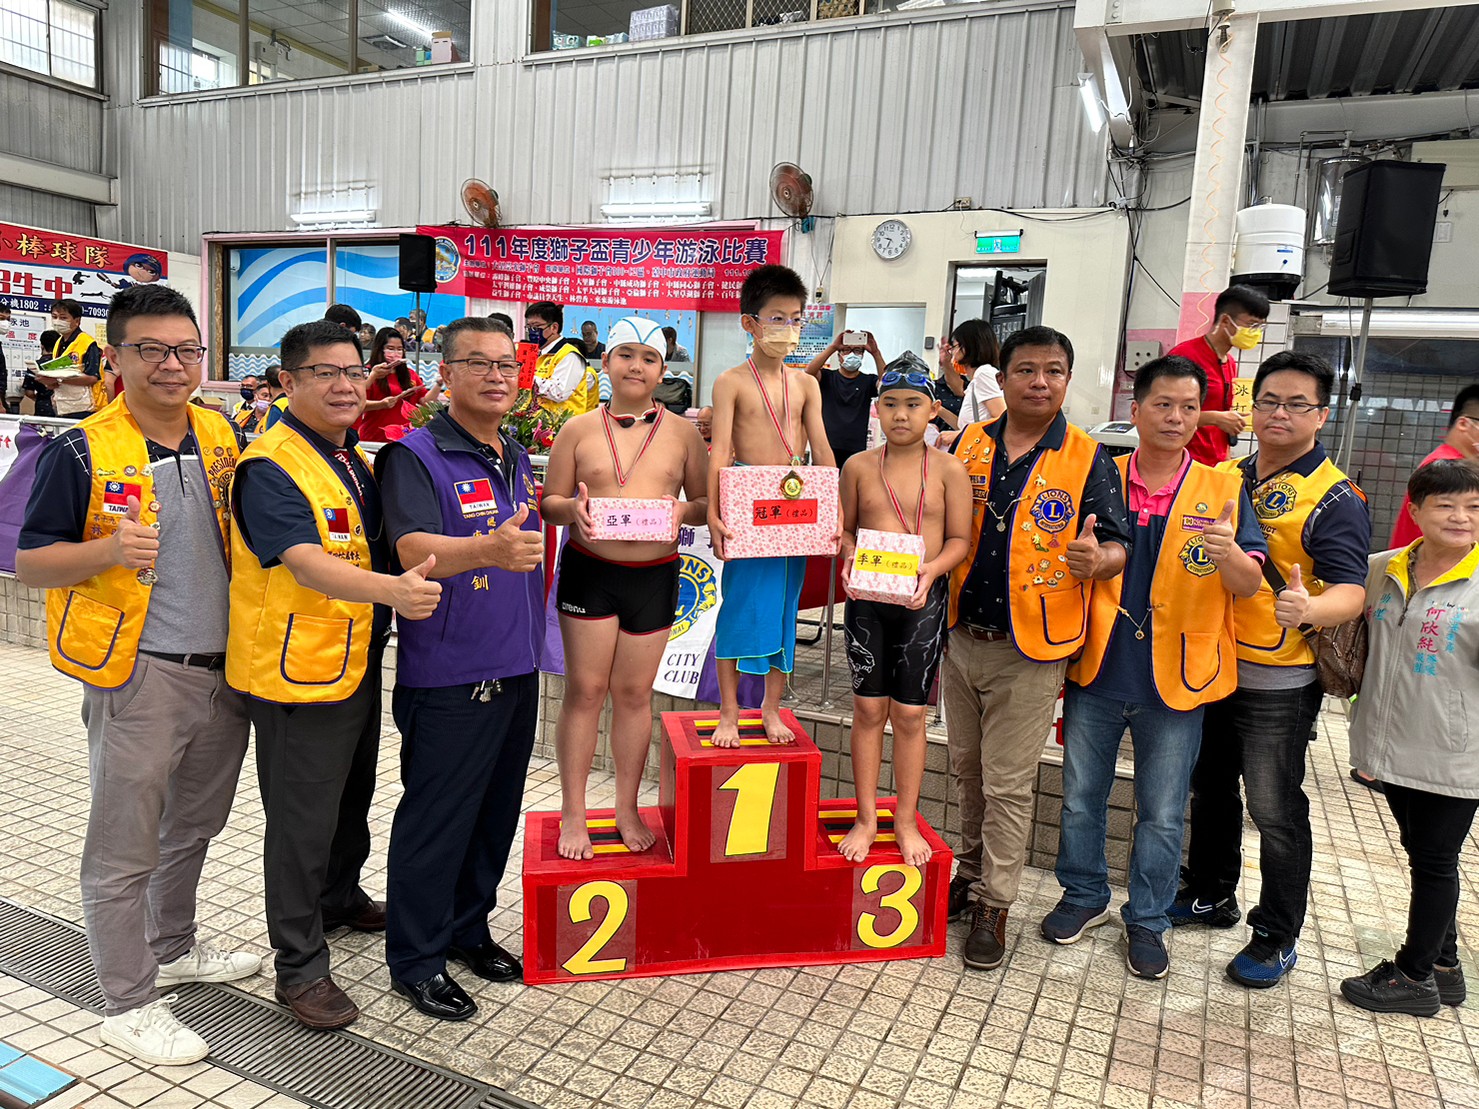 2022/10/16協辦獅子盃青少年游泳比賽